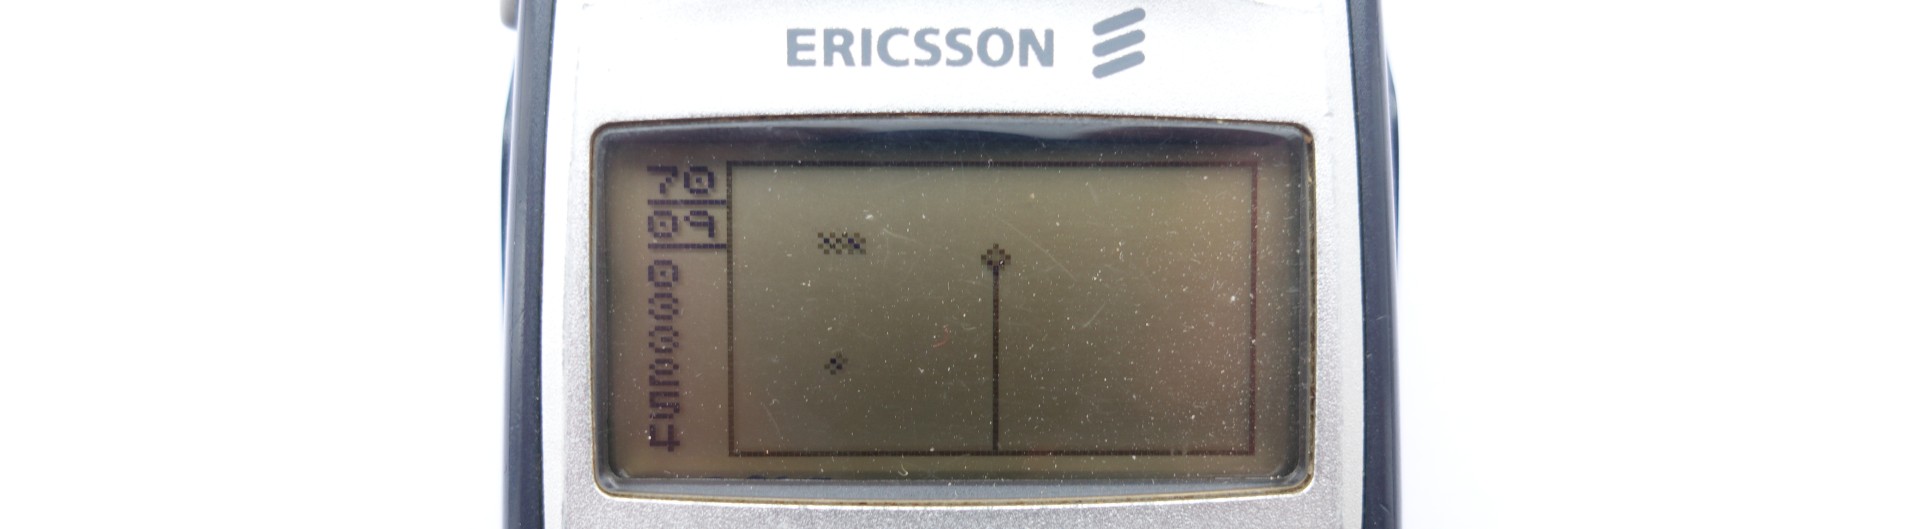 Древности: Ericsson T39 и ранний мобильный интернет - 14